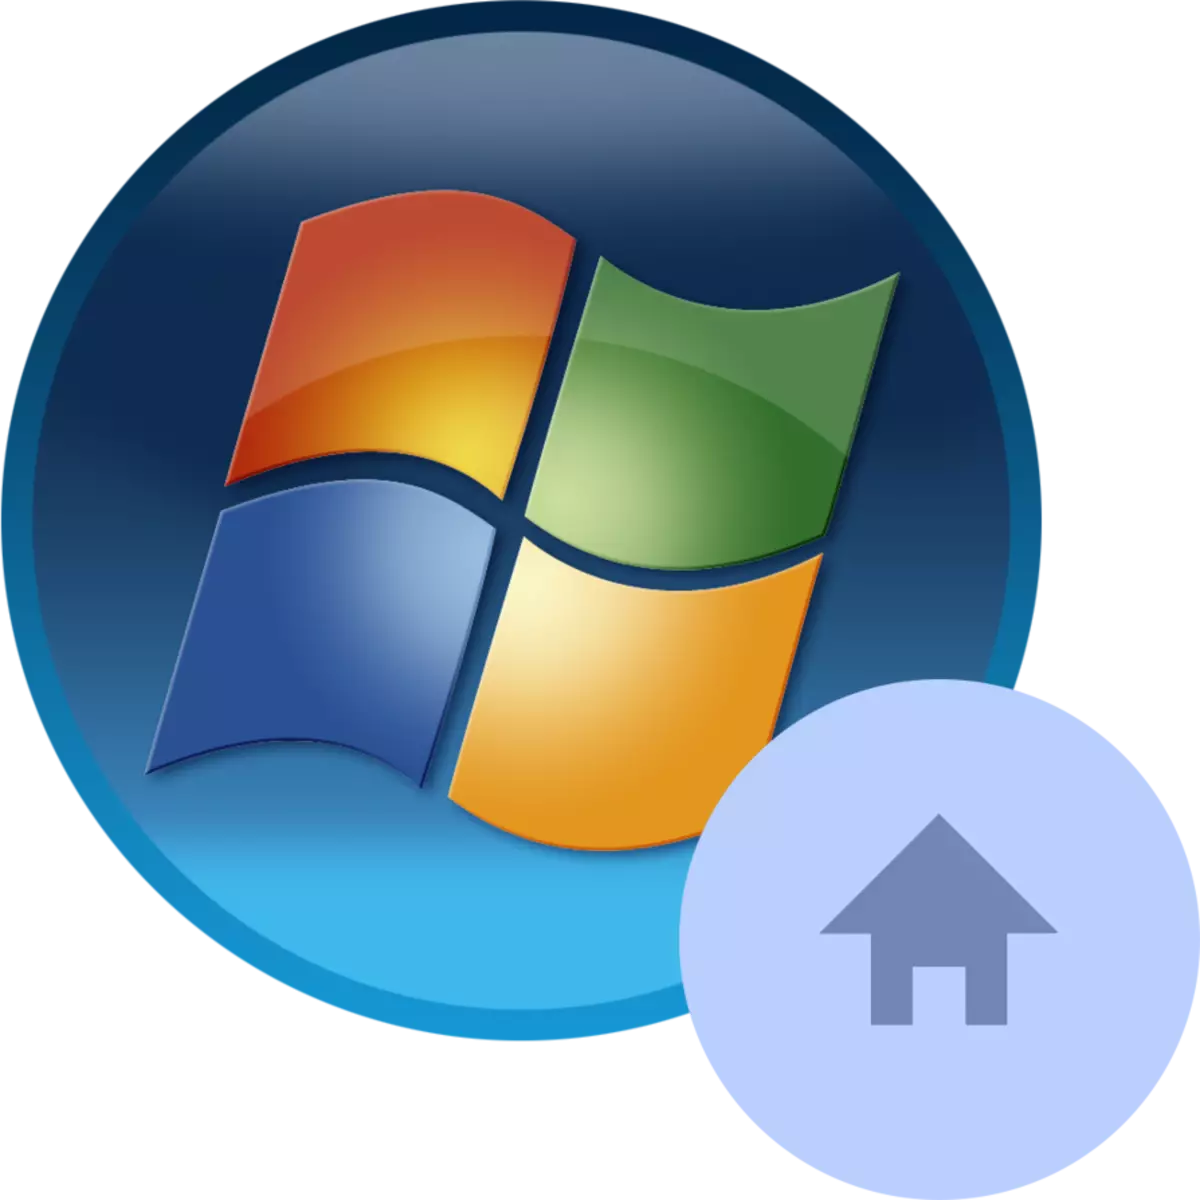 Yadda za a cire download sarrafa a cikin Windows 7